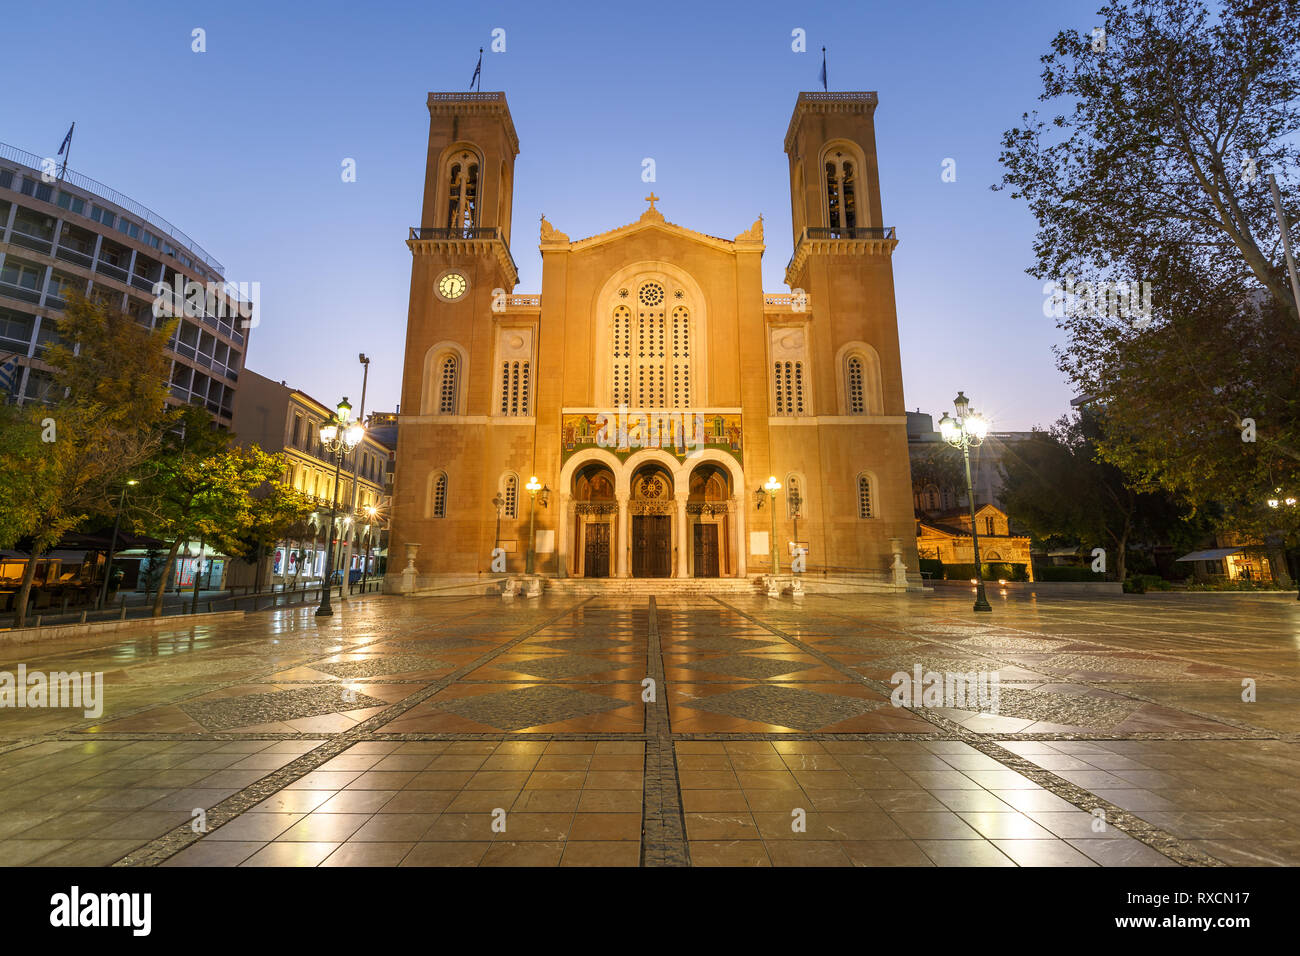 Athens, Grecia - 6 Novembre 2018: Cattedrale metropolitana di Atene situato in una metropoli Square nella città vecchia di Atene. Foto Stock